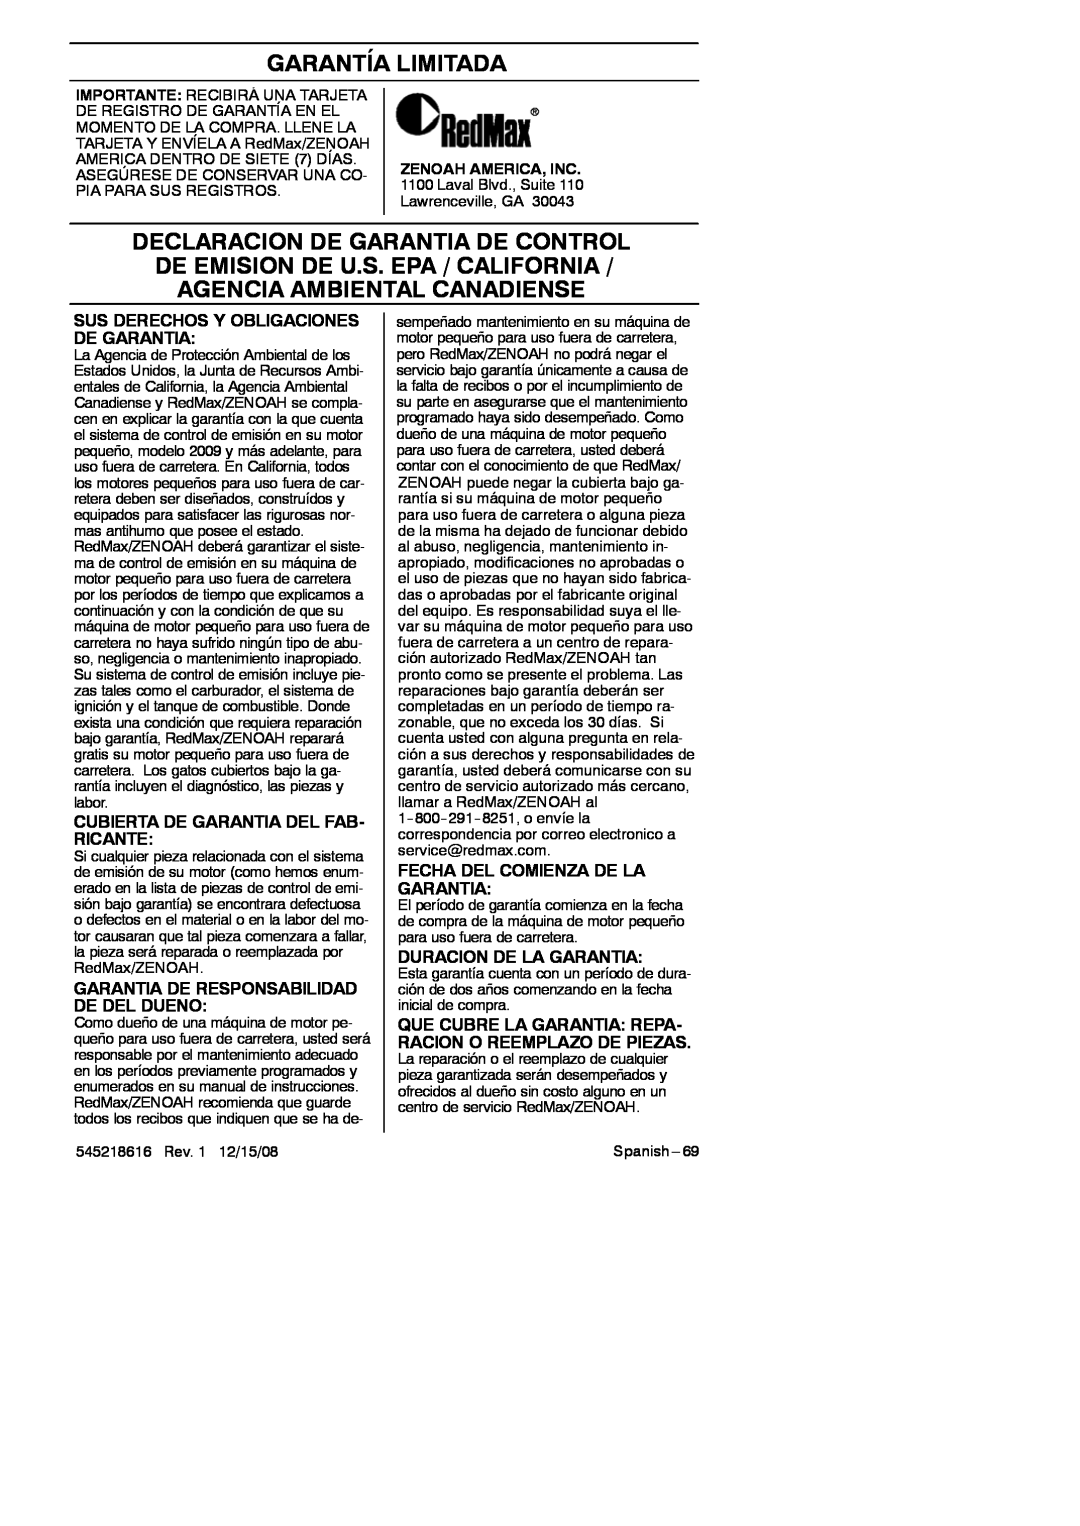 RedMax HB280 manual Sus Derechos Y Obligaciones De Garantia, Cubierta De Garantia Del Fab- Ricante, Duracion De La Garantia 